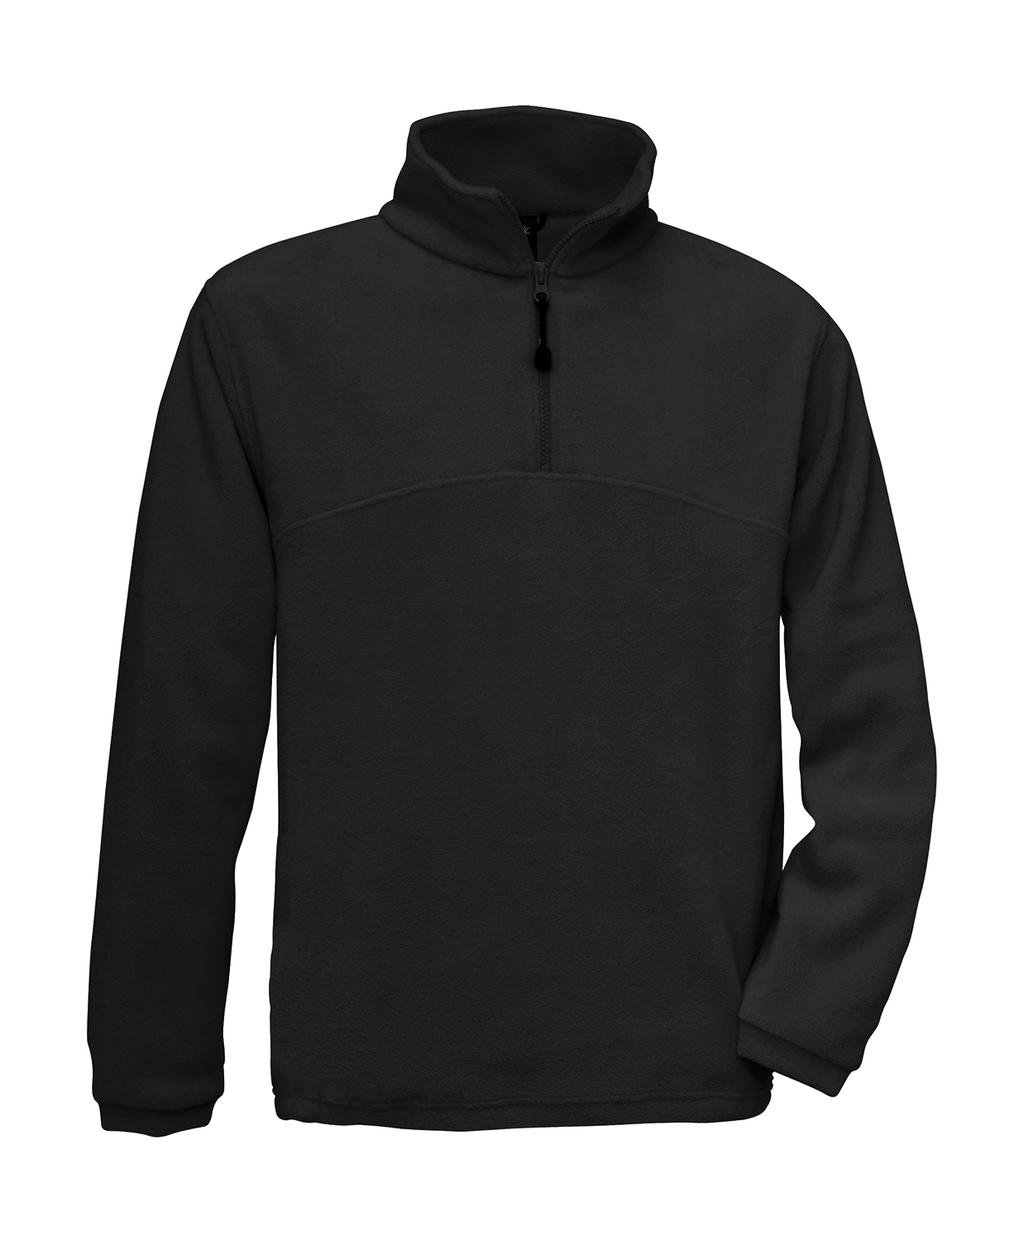  Highlander+ 1/4 Zip Fleece Top in Farbe Black